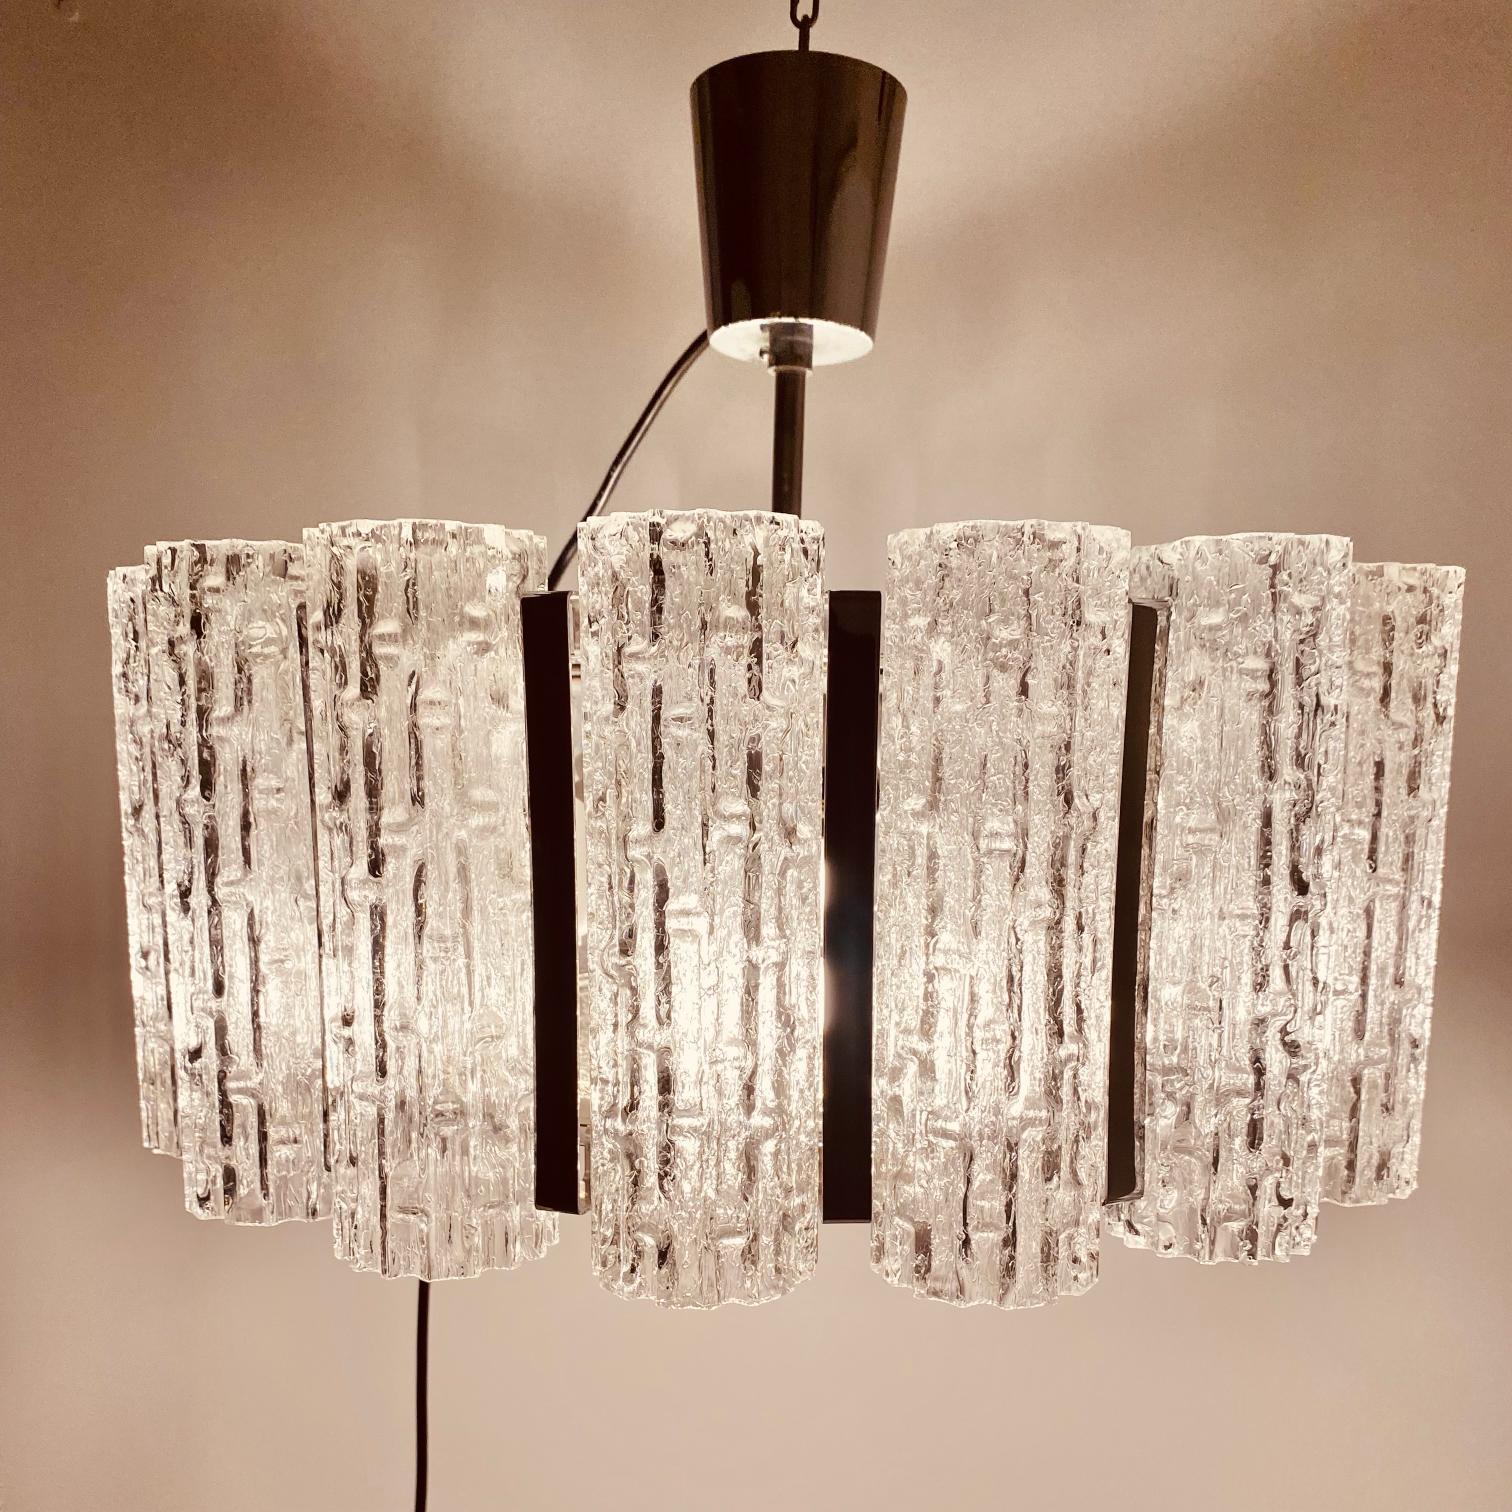 Kronleuchter aus Murano-Glas, hergestellt Mitte der 1960er Jahre von Barovier & Toso (Venedig).

Dieser schöne runde Vintage-Kronleuchter besteht aus 16 fein gearbeiteten Glasröhren und einer großen Eisglasscheibe am Fuß der Lampe. 

Die Struktur